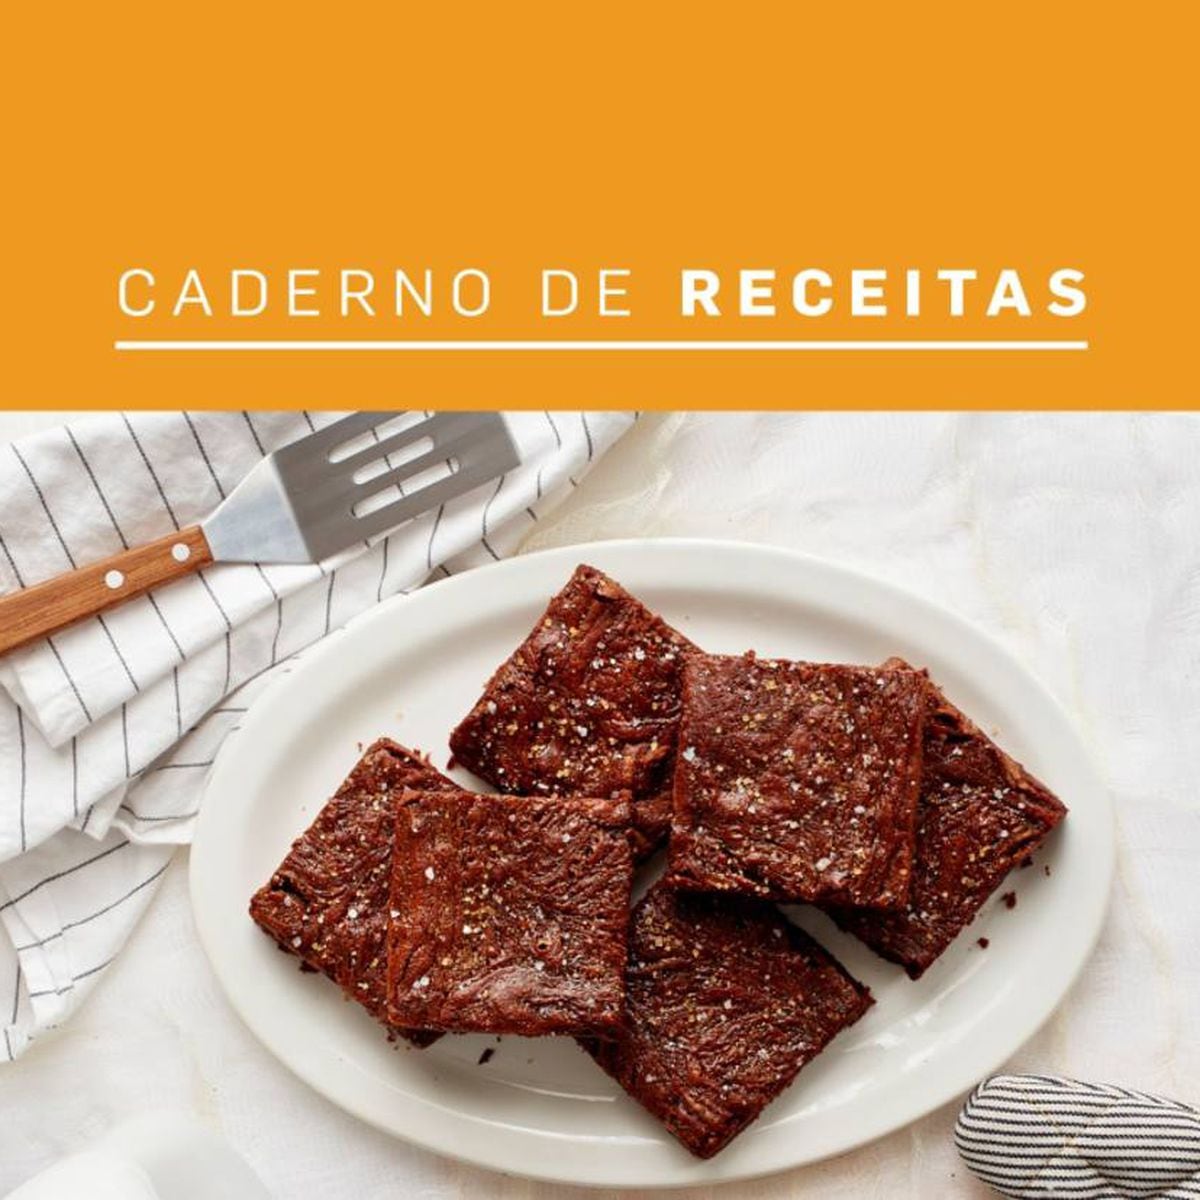 5 Receitas de Bolos No Pote para Fazer e Começar A Vender!, PDF, Chocolate